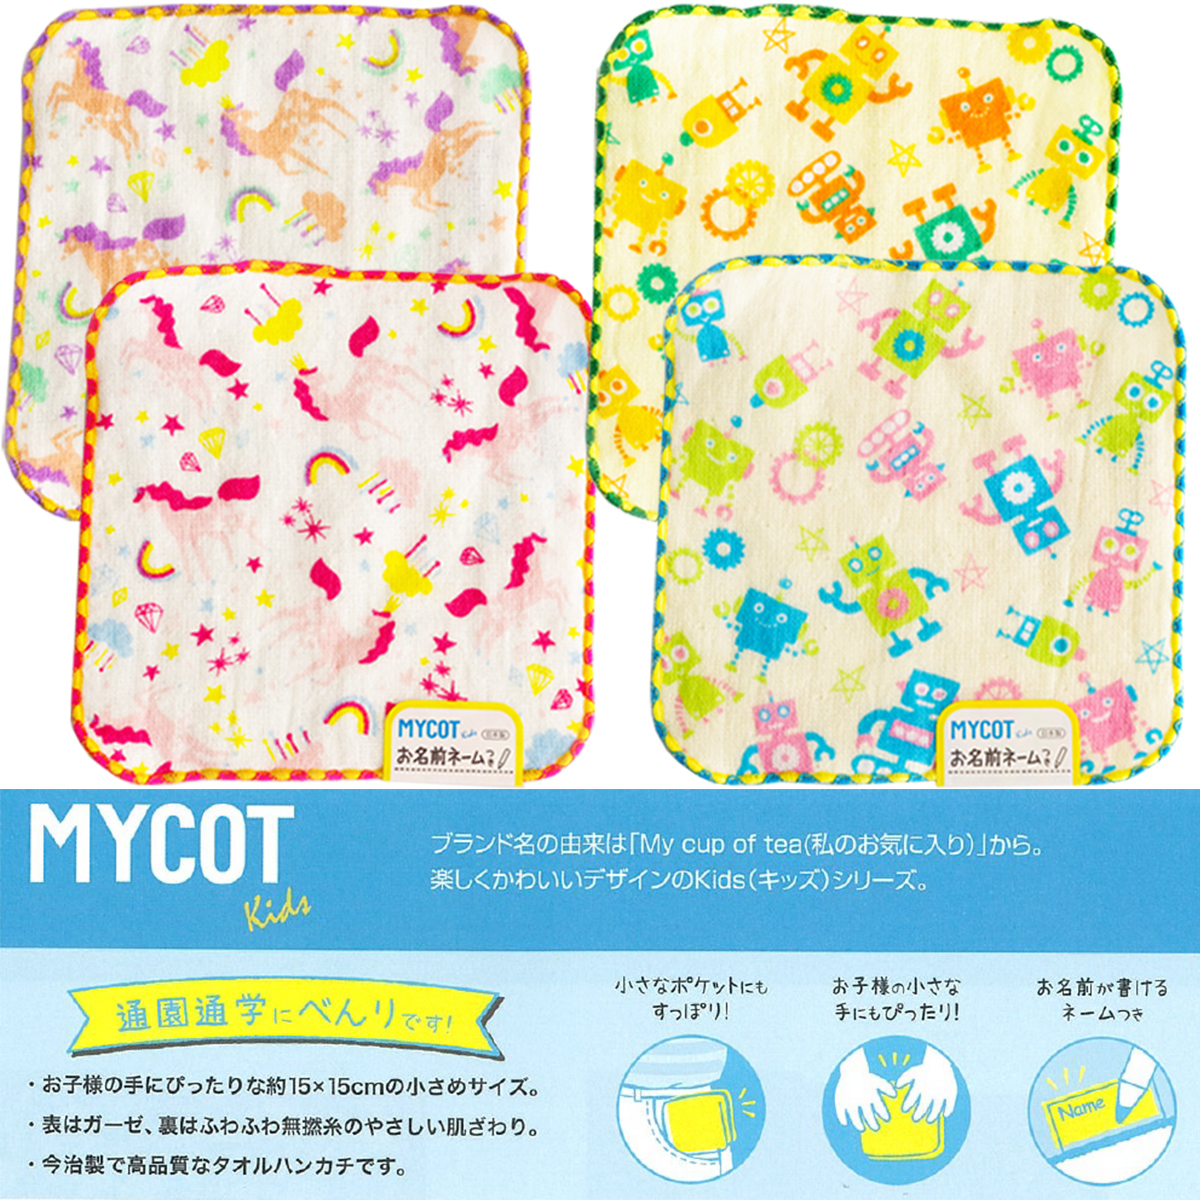 【OCURONE オクローネ】MYCOT Kids ユニコーン タオルチーフ【日本製・15cmサイズ】